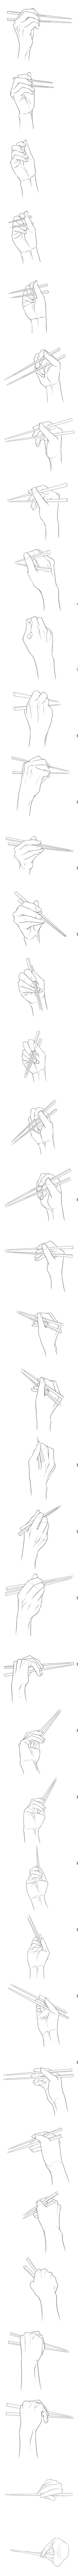 握筷子的手各个角度